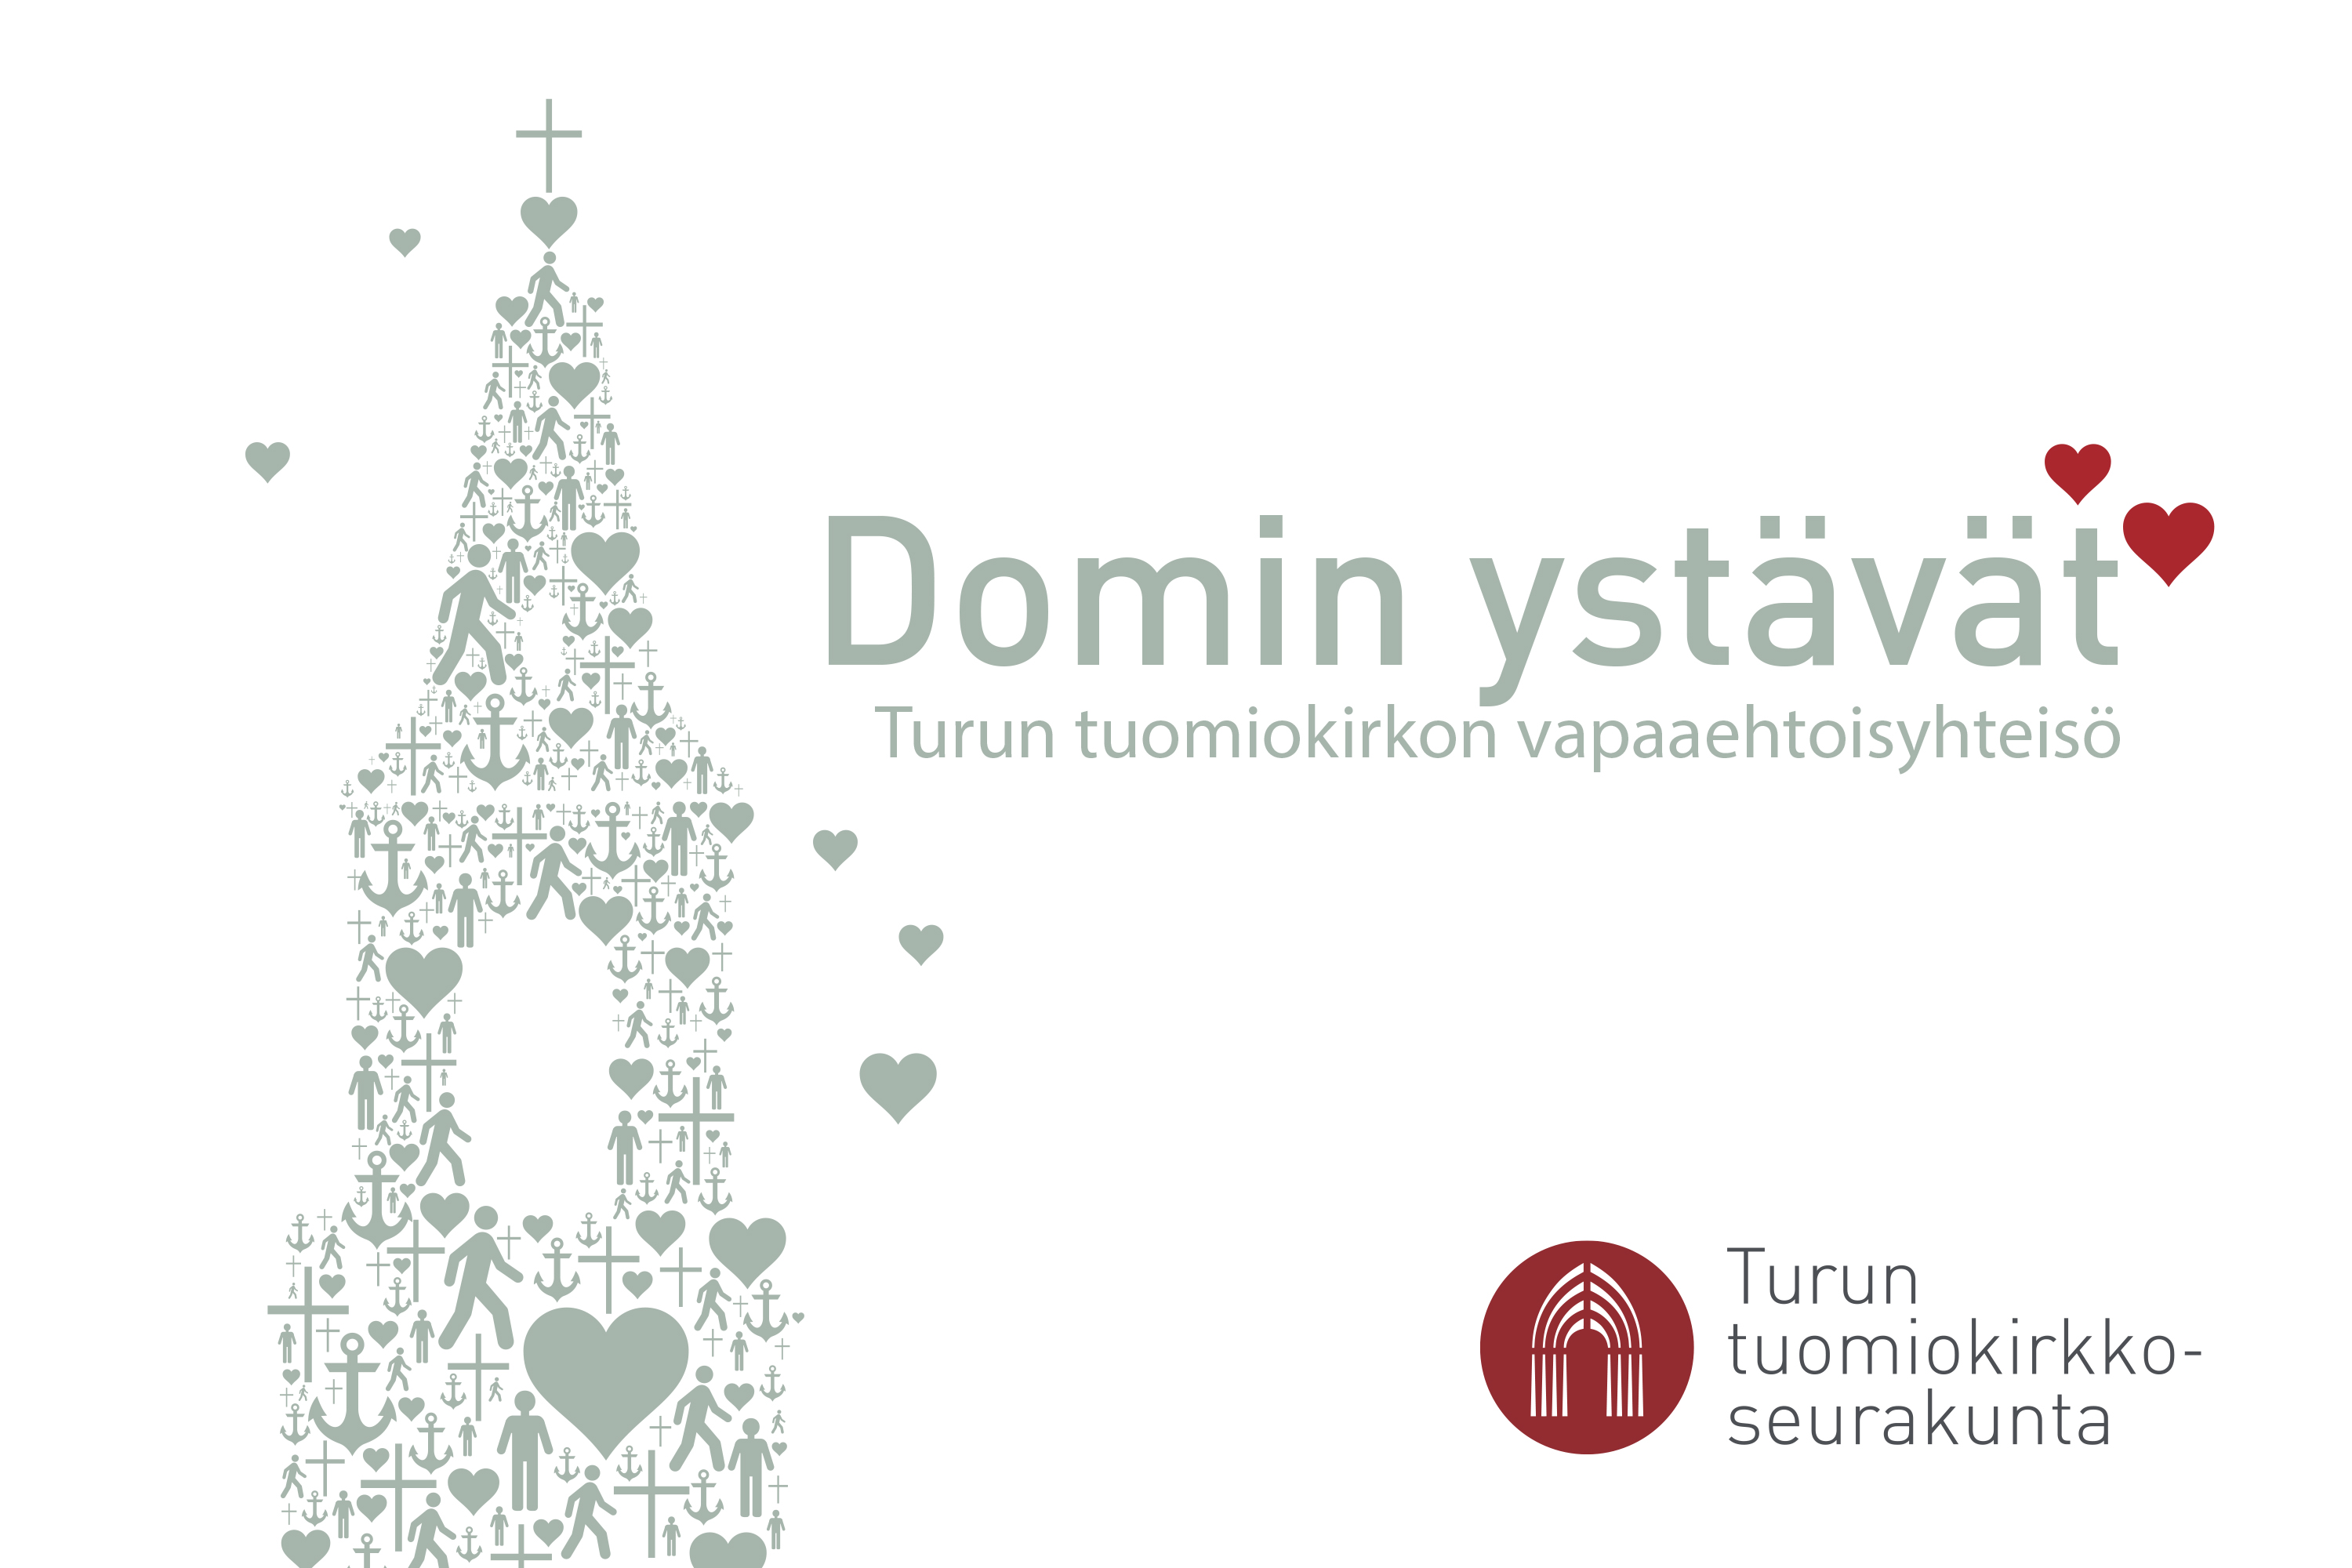 Domin ystävien logo tekstillä Domin ystävät, Turun tuomiokirkon vapaaehtoisyhteisö.